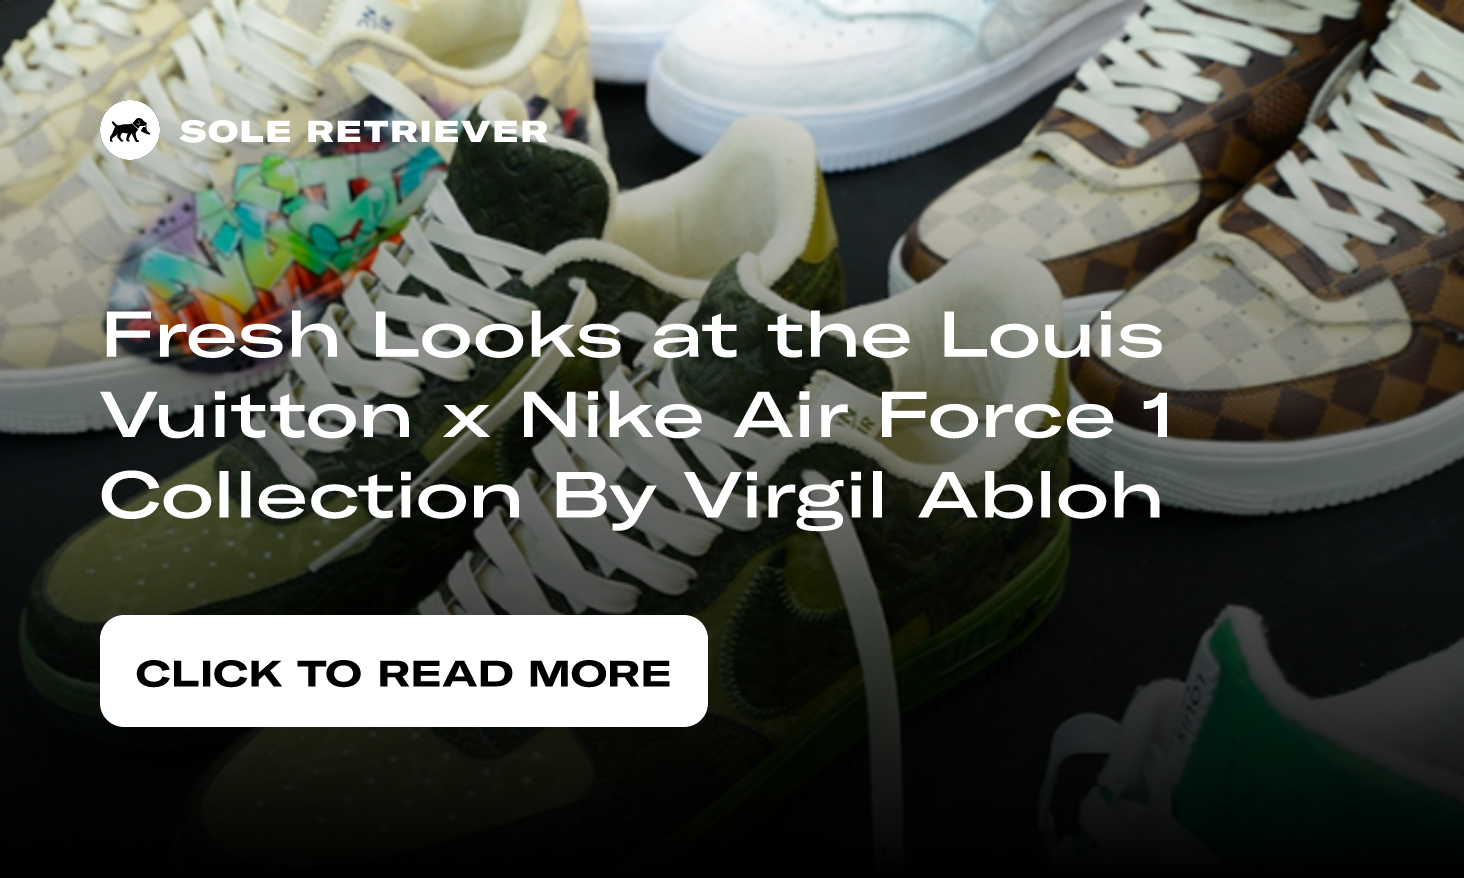 Nike Air Force 1 High Louis Vuitton Graffiti Raffles and Release